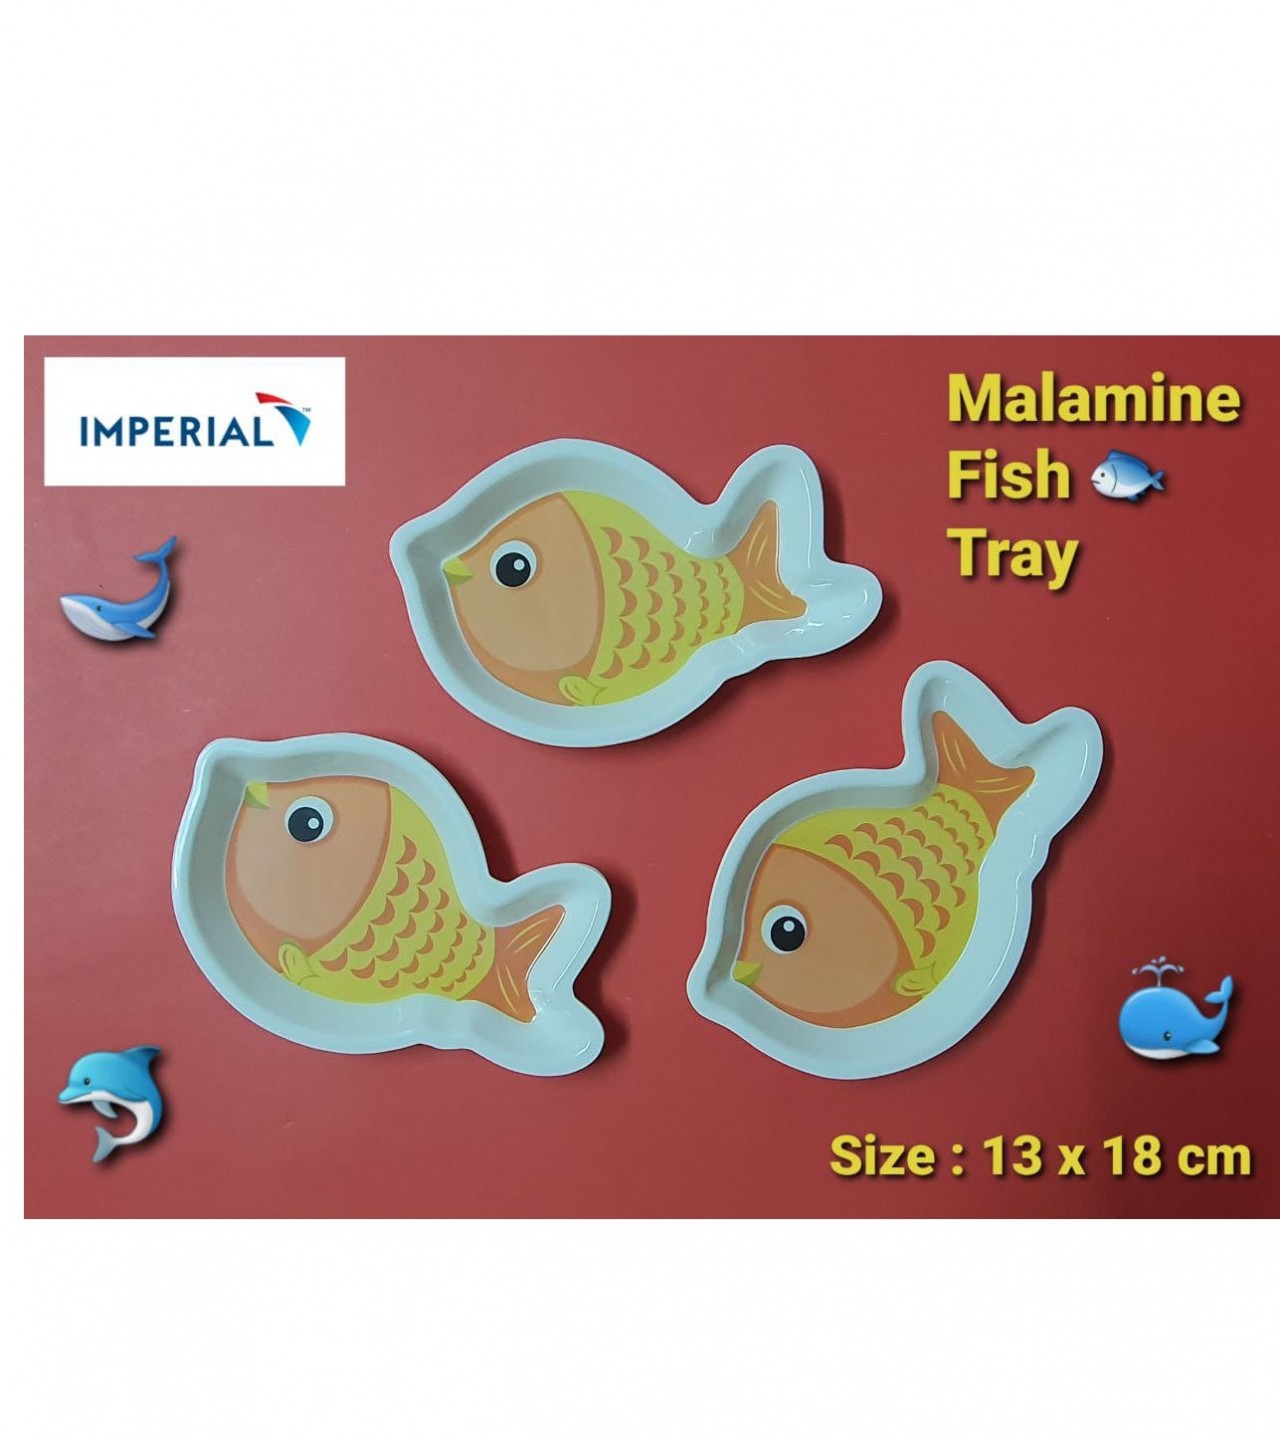 Malamine Fish Tray Code (0110)